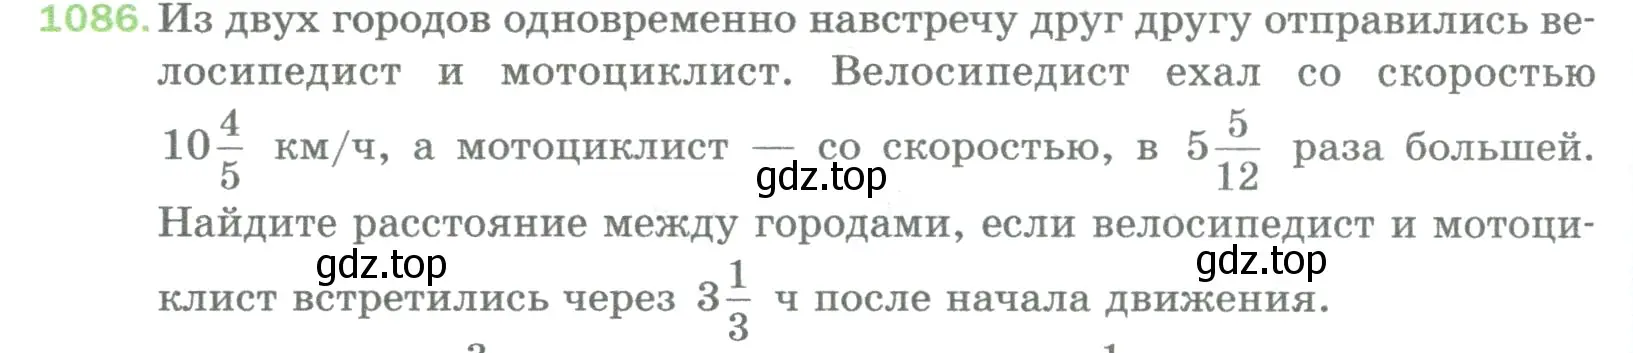 Условие номер 1086 (страница 244) гдз по математике 5 класс Мерзляк, Полонский, учебник